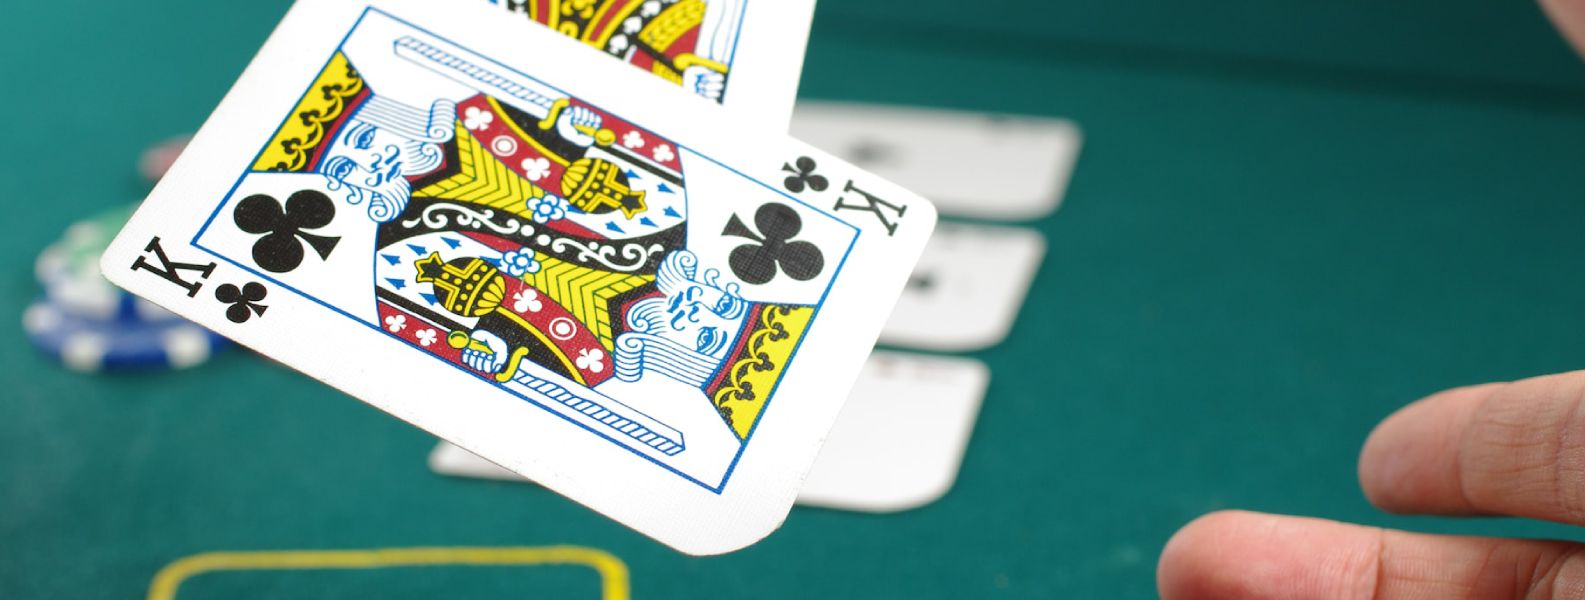 Conoce la verdadera historia detrás de los juegos de cartas de los casinos